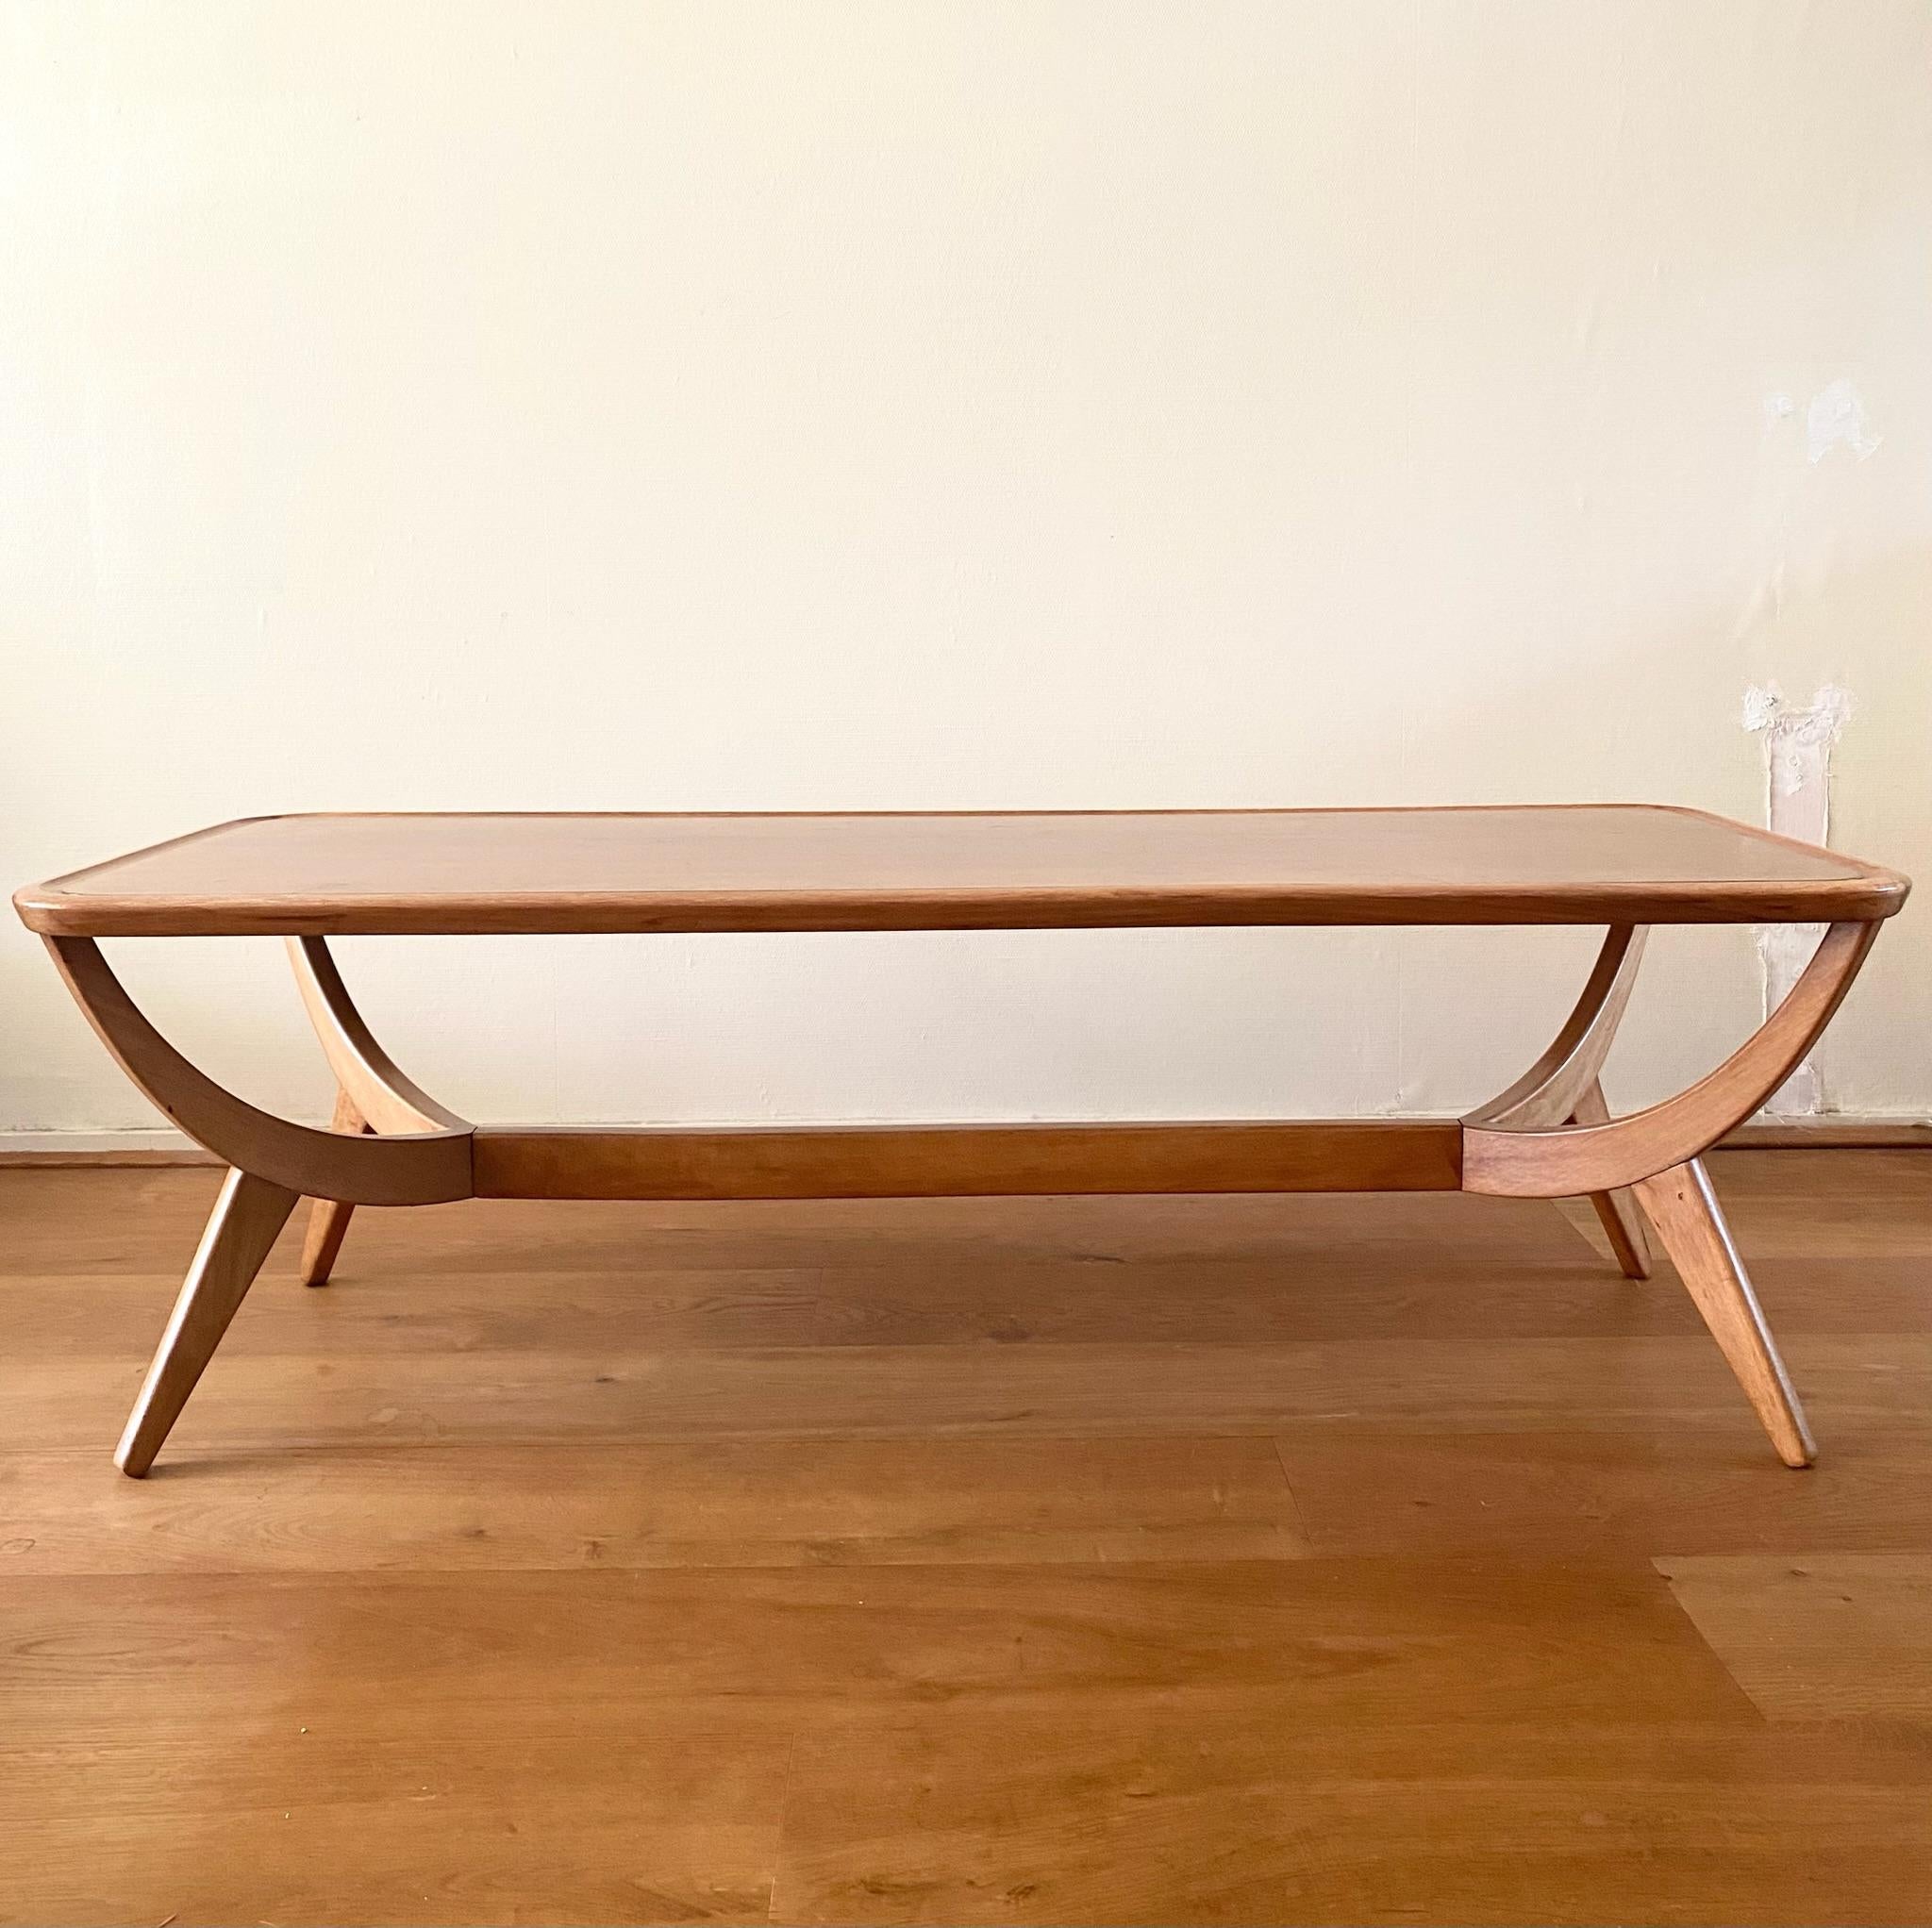 Elégante table basse de style classique de la série Poly-Z, conçue par Abraham Patijn pour Zijlstra Joure vers les années 1950. Cadre de forme organique en noyer et placage de noyer. La table est en bon état, avec une usure due à l'âge et à